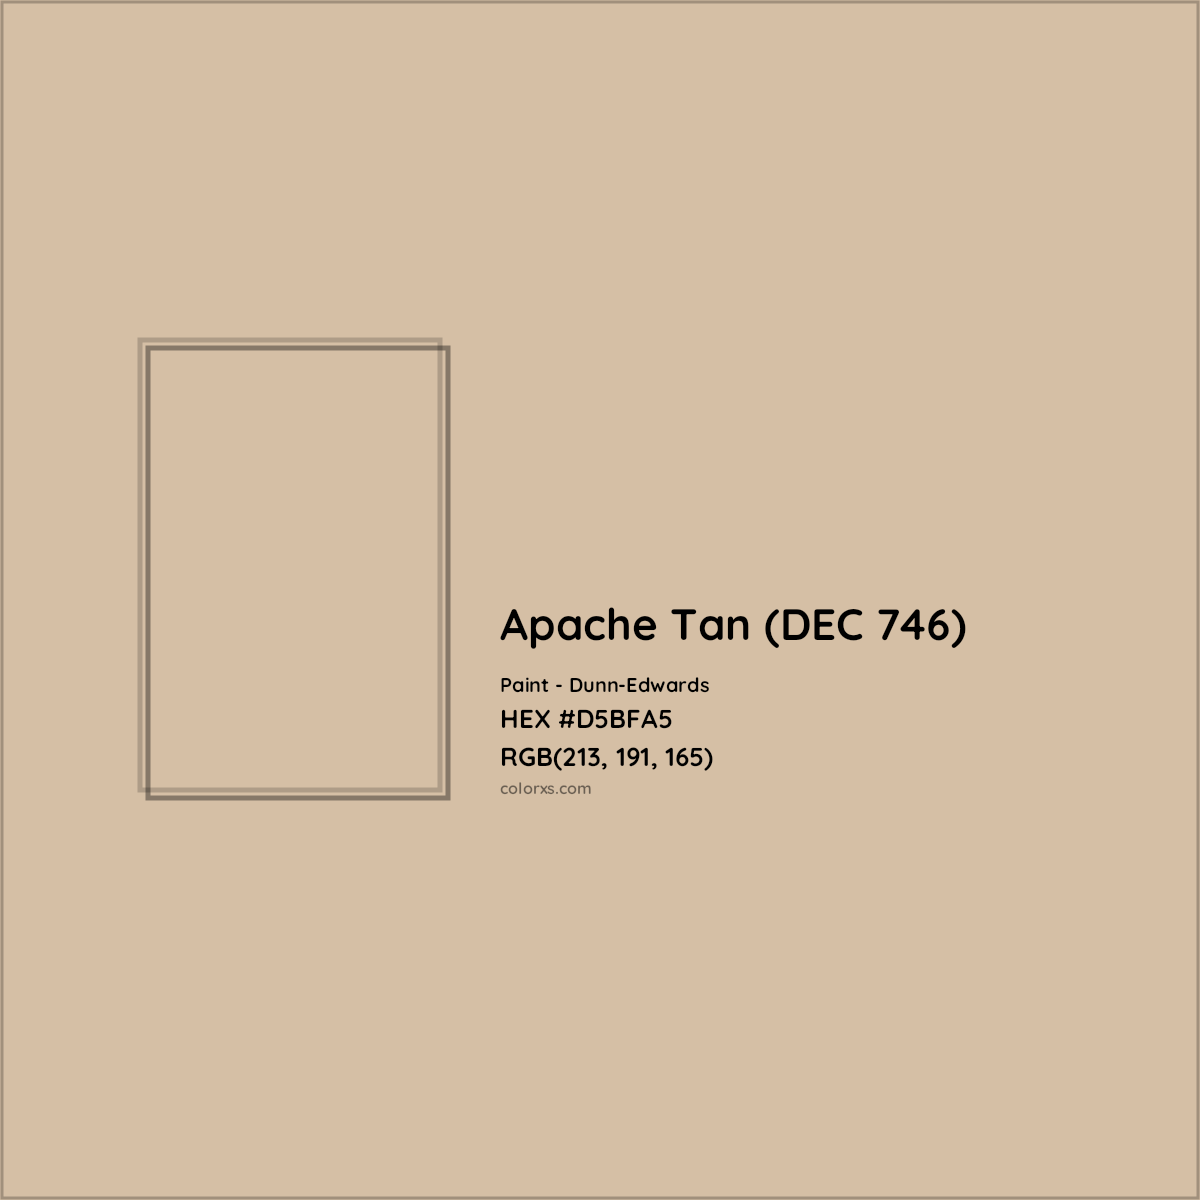 HEX #D5BFA5 Apache Tan (DEC 746) Paint Dunn-Edwards - Color Code